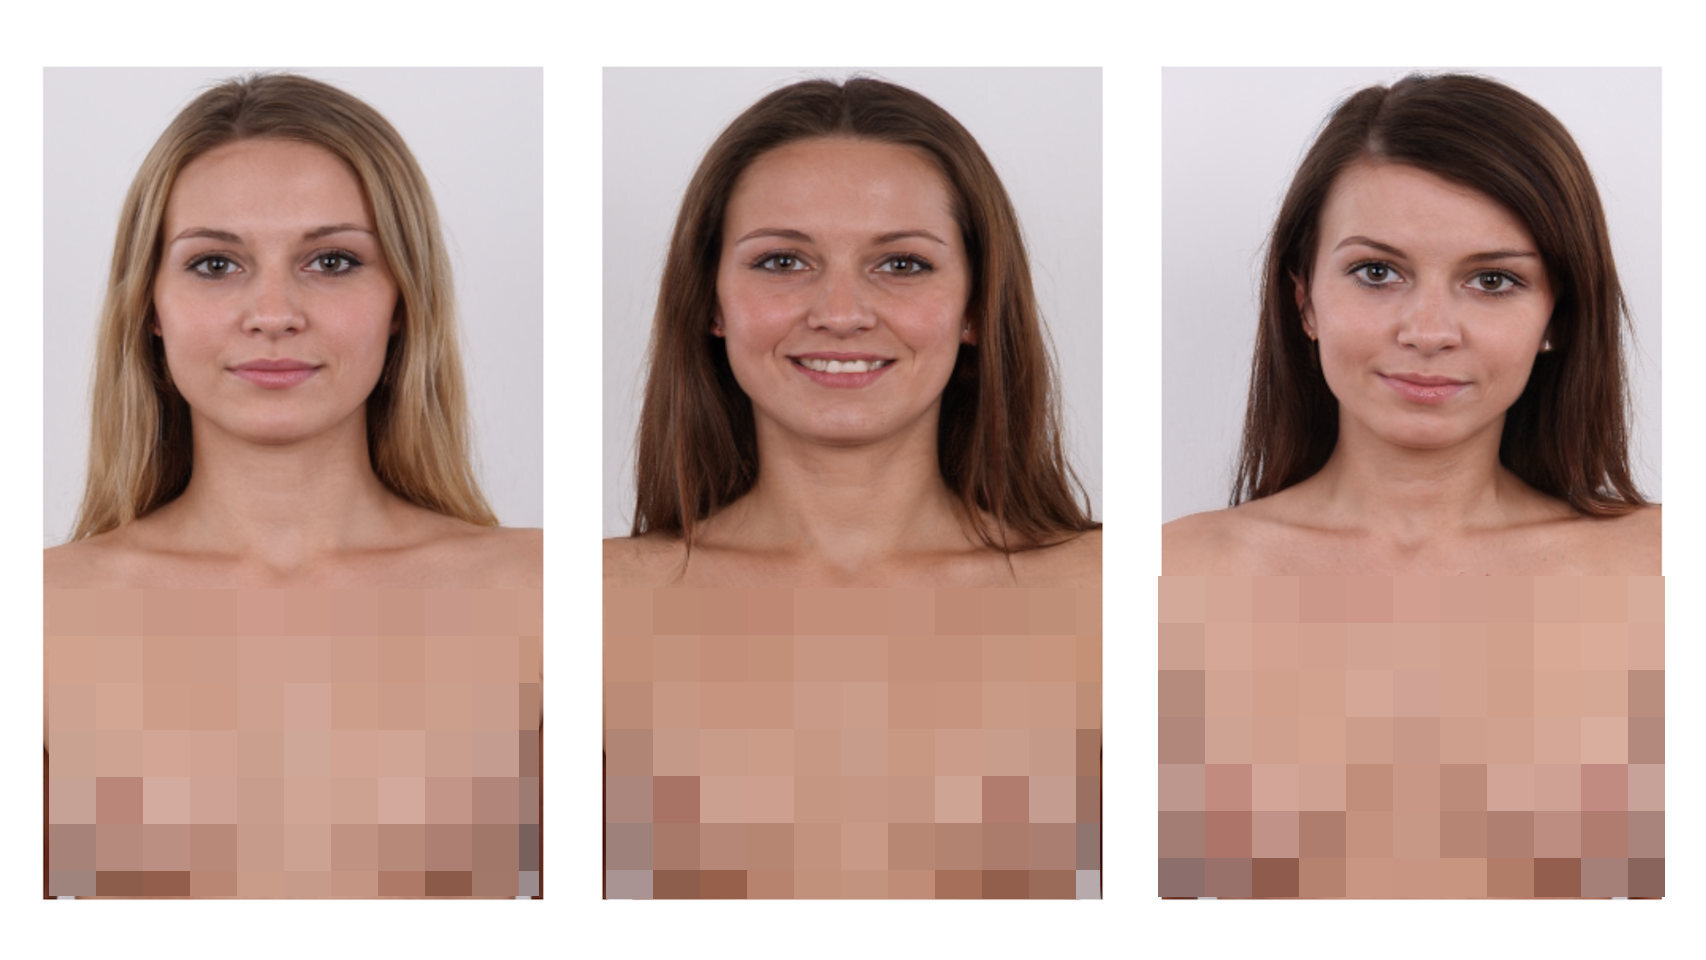 La página genera imágenes de mujeres desnudas en base a un algoritmo